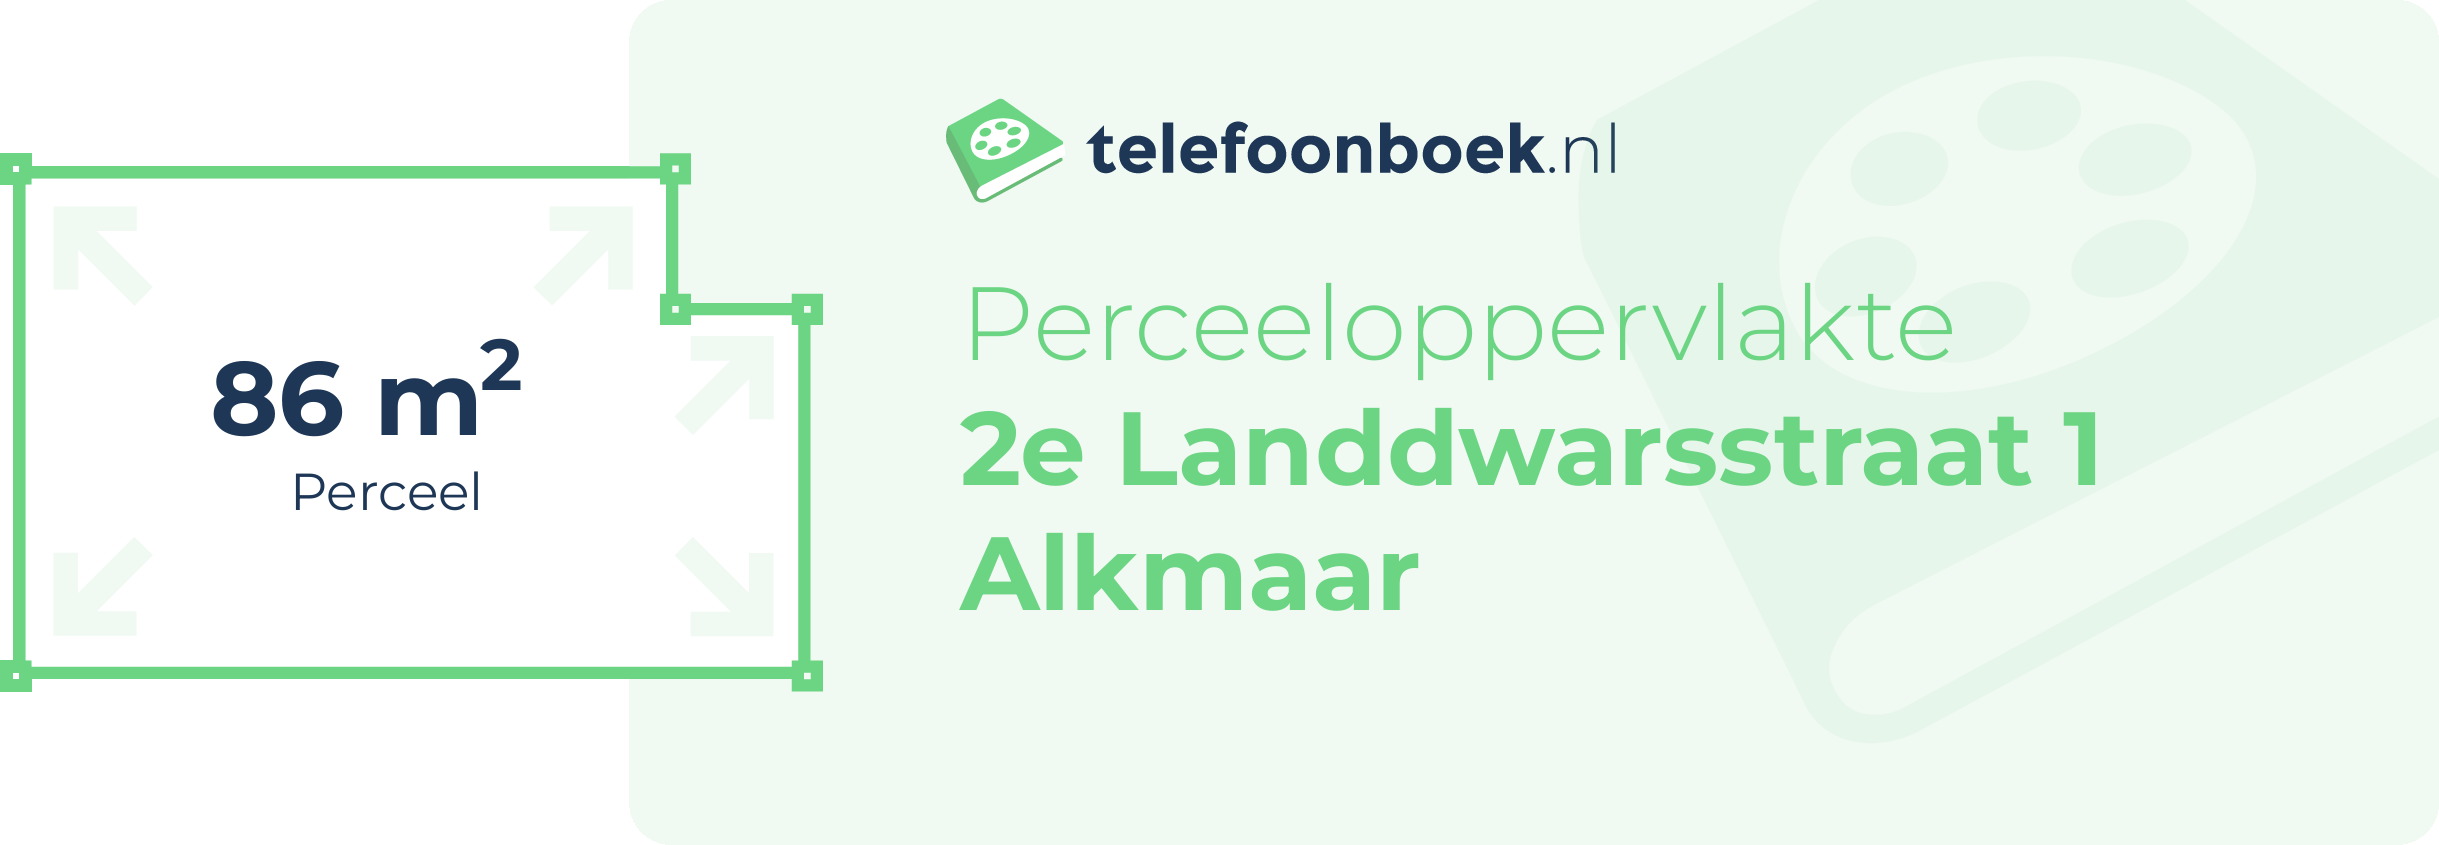 Perceeloppervlakte 2e Landdwarsstraat 1 Alkmaar